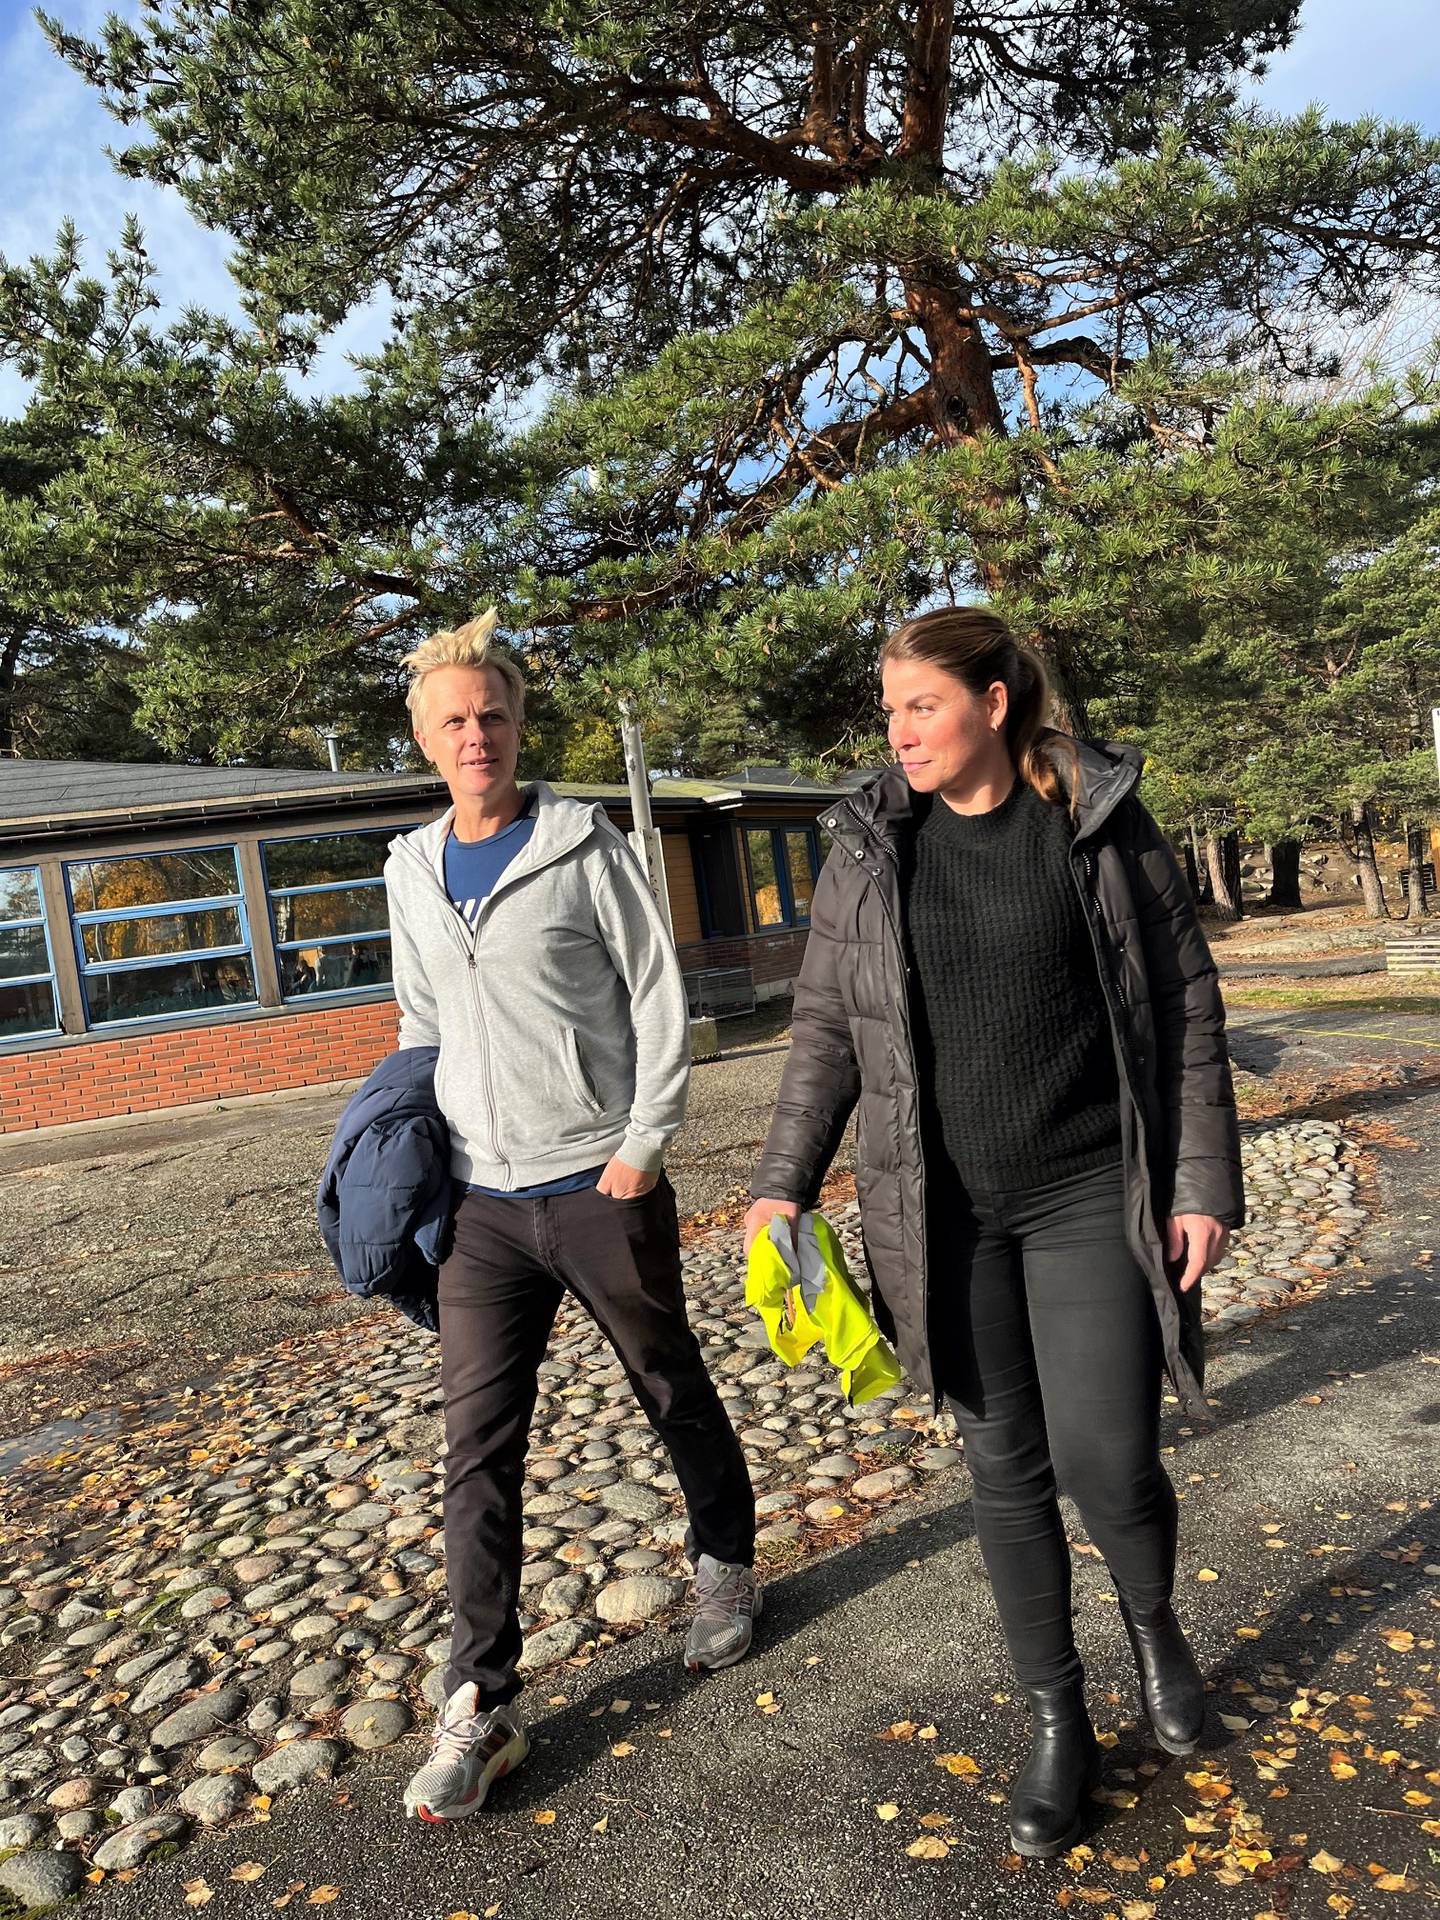 Skolen Andreas Larsen og Camilla Therese Ek jobber på, har store uteområder med variert terreng, og som ligger rett ved gode turmuligheter. De bruker gjerne nærområdene i undervisningstiden.